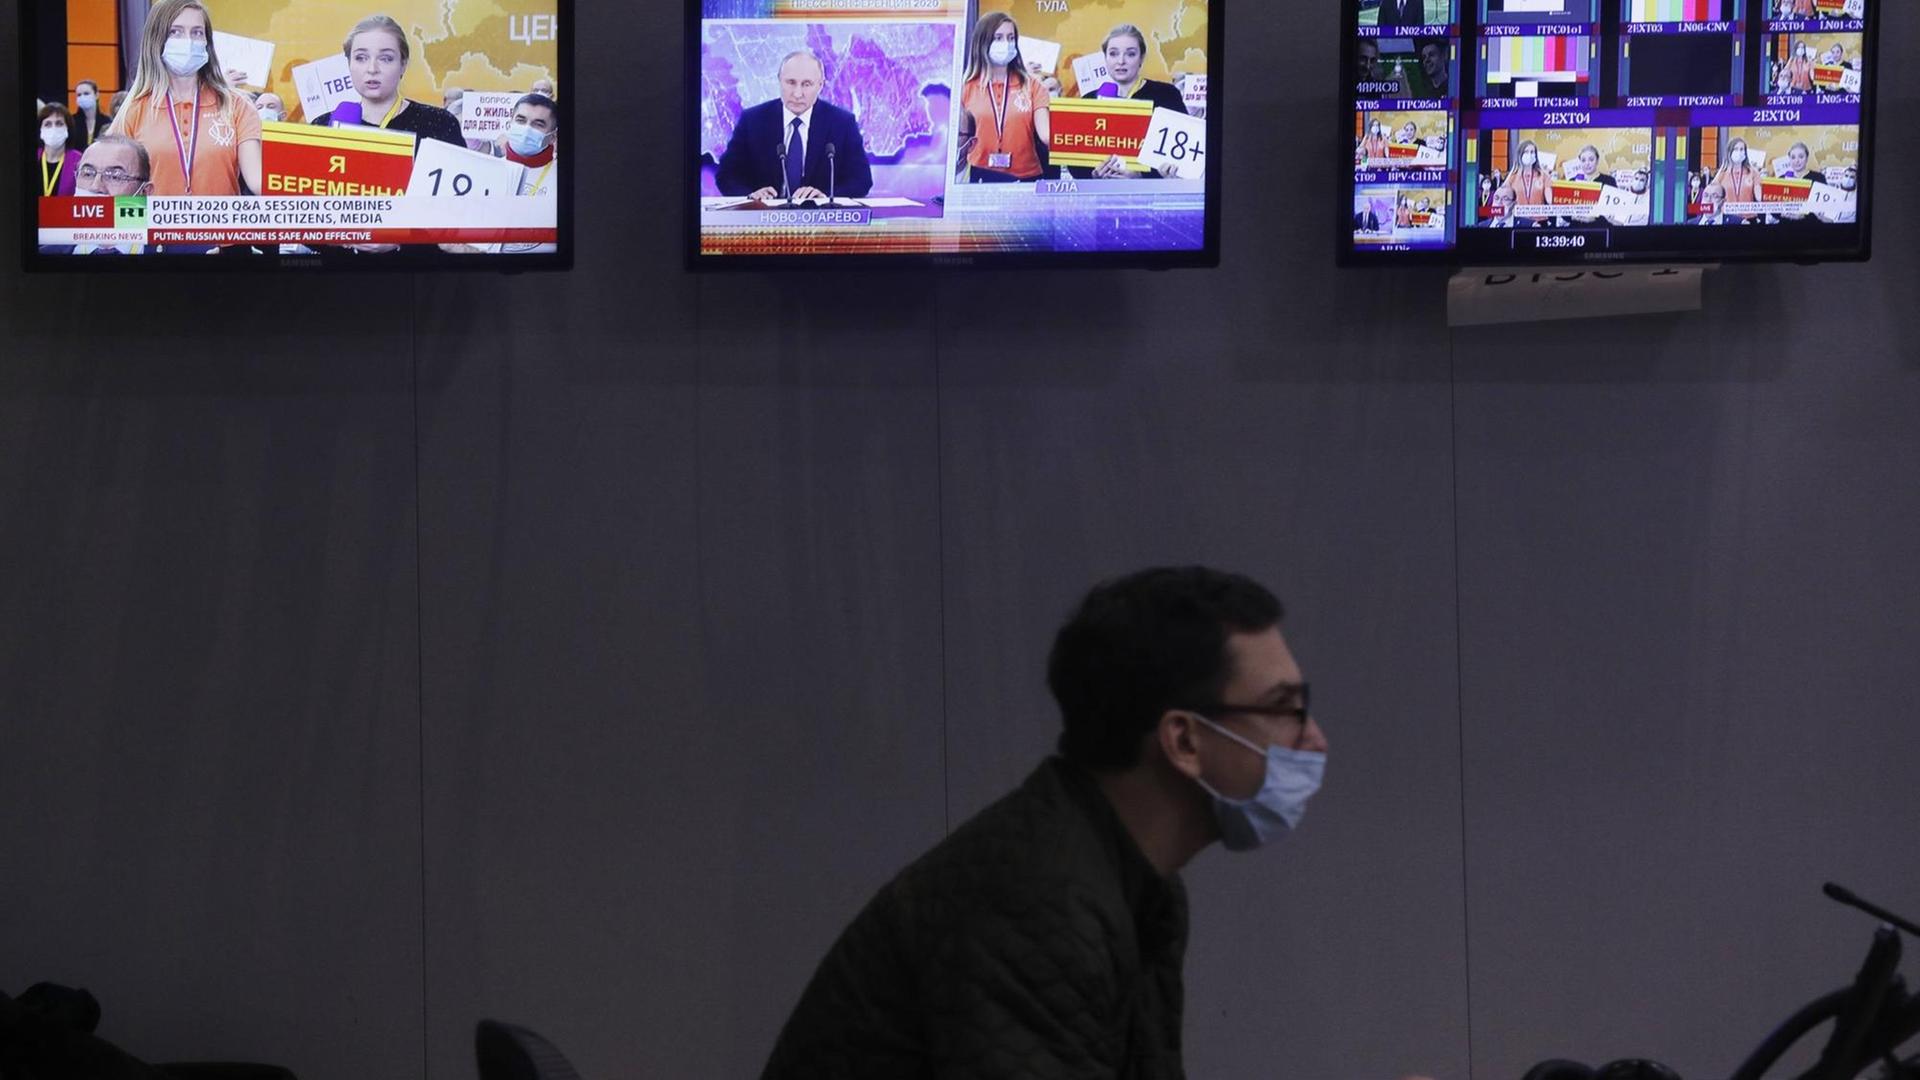 Ein Journalist sitz in einer Redaktion und schaut auf einen Computer. Im Hintergrund sind Bildschirme zu sehen.